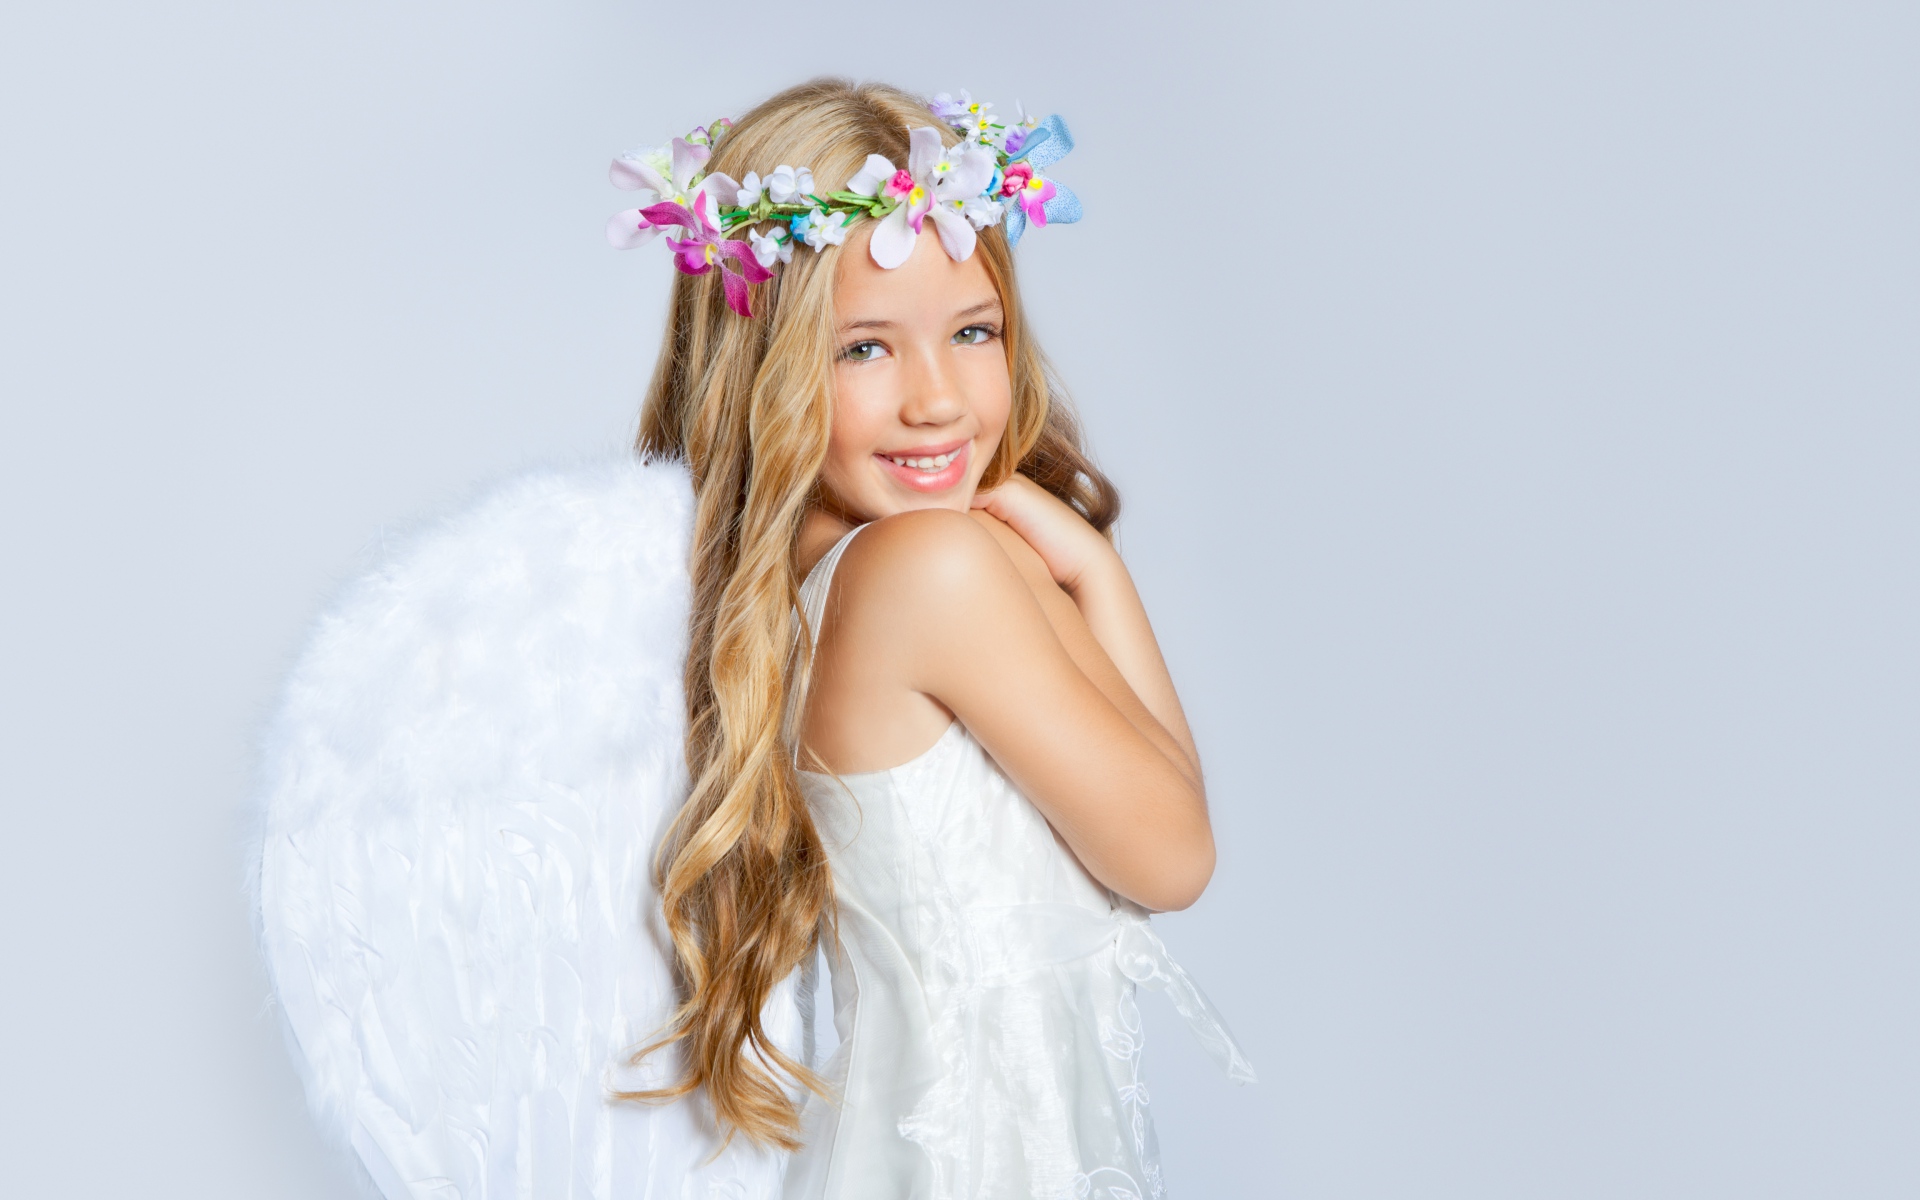 Ангельская красота молоденькой девочки завораживает